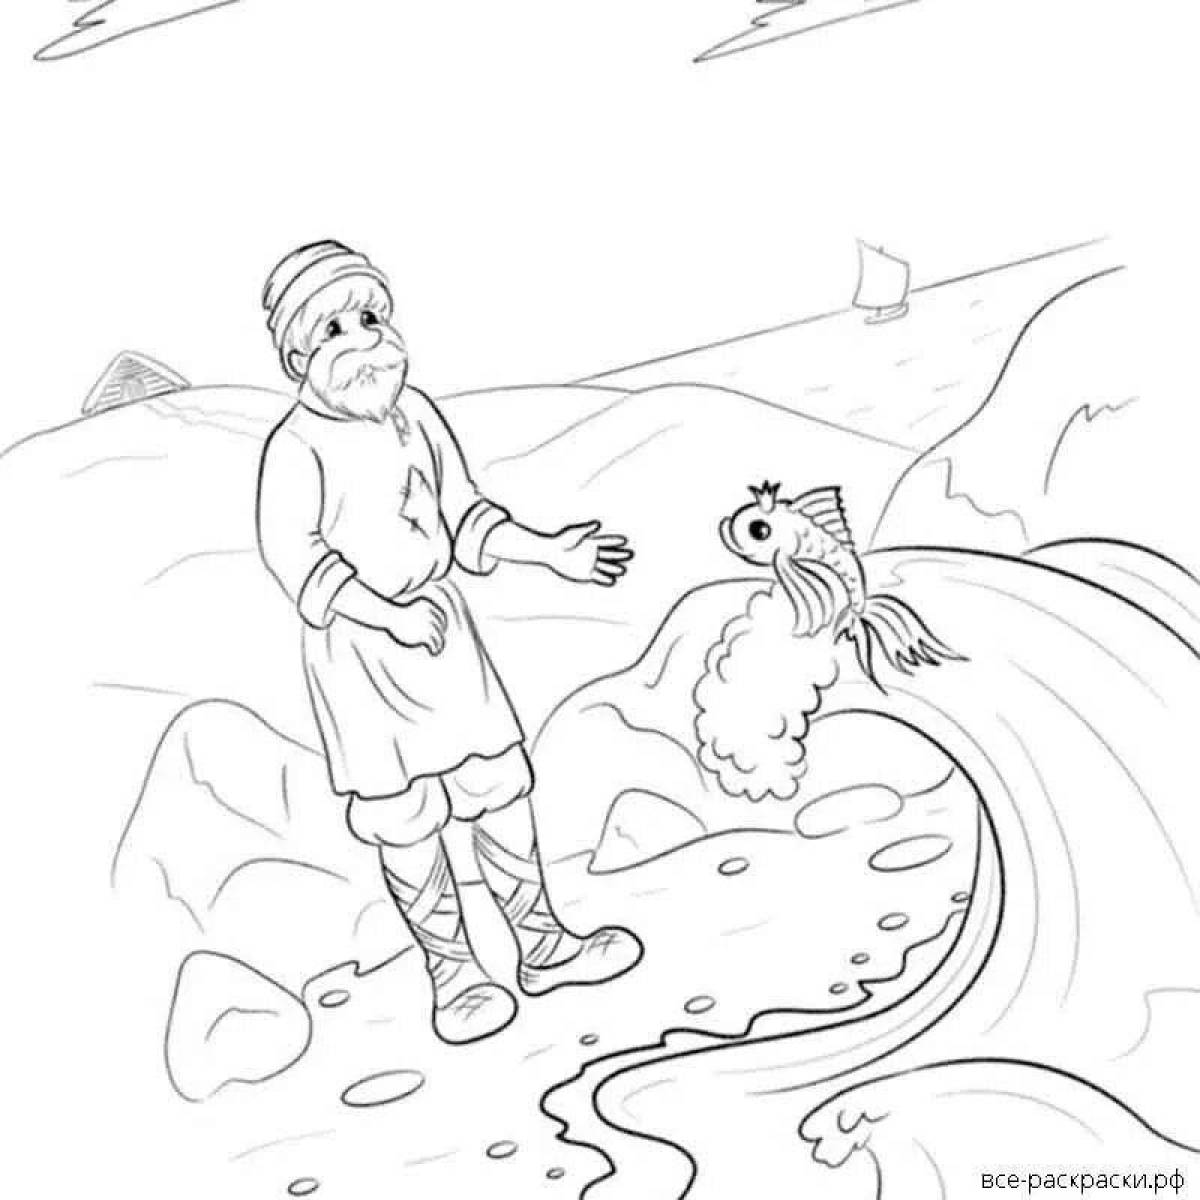 Рисунки детей к сказке о рыбаке и рыбке Пушкина